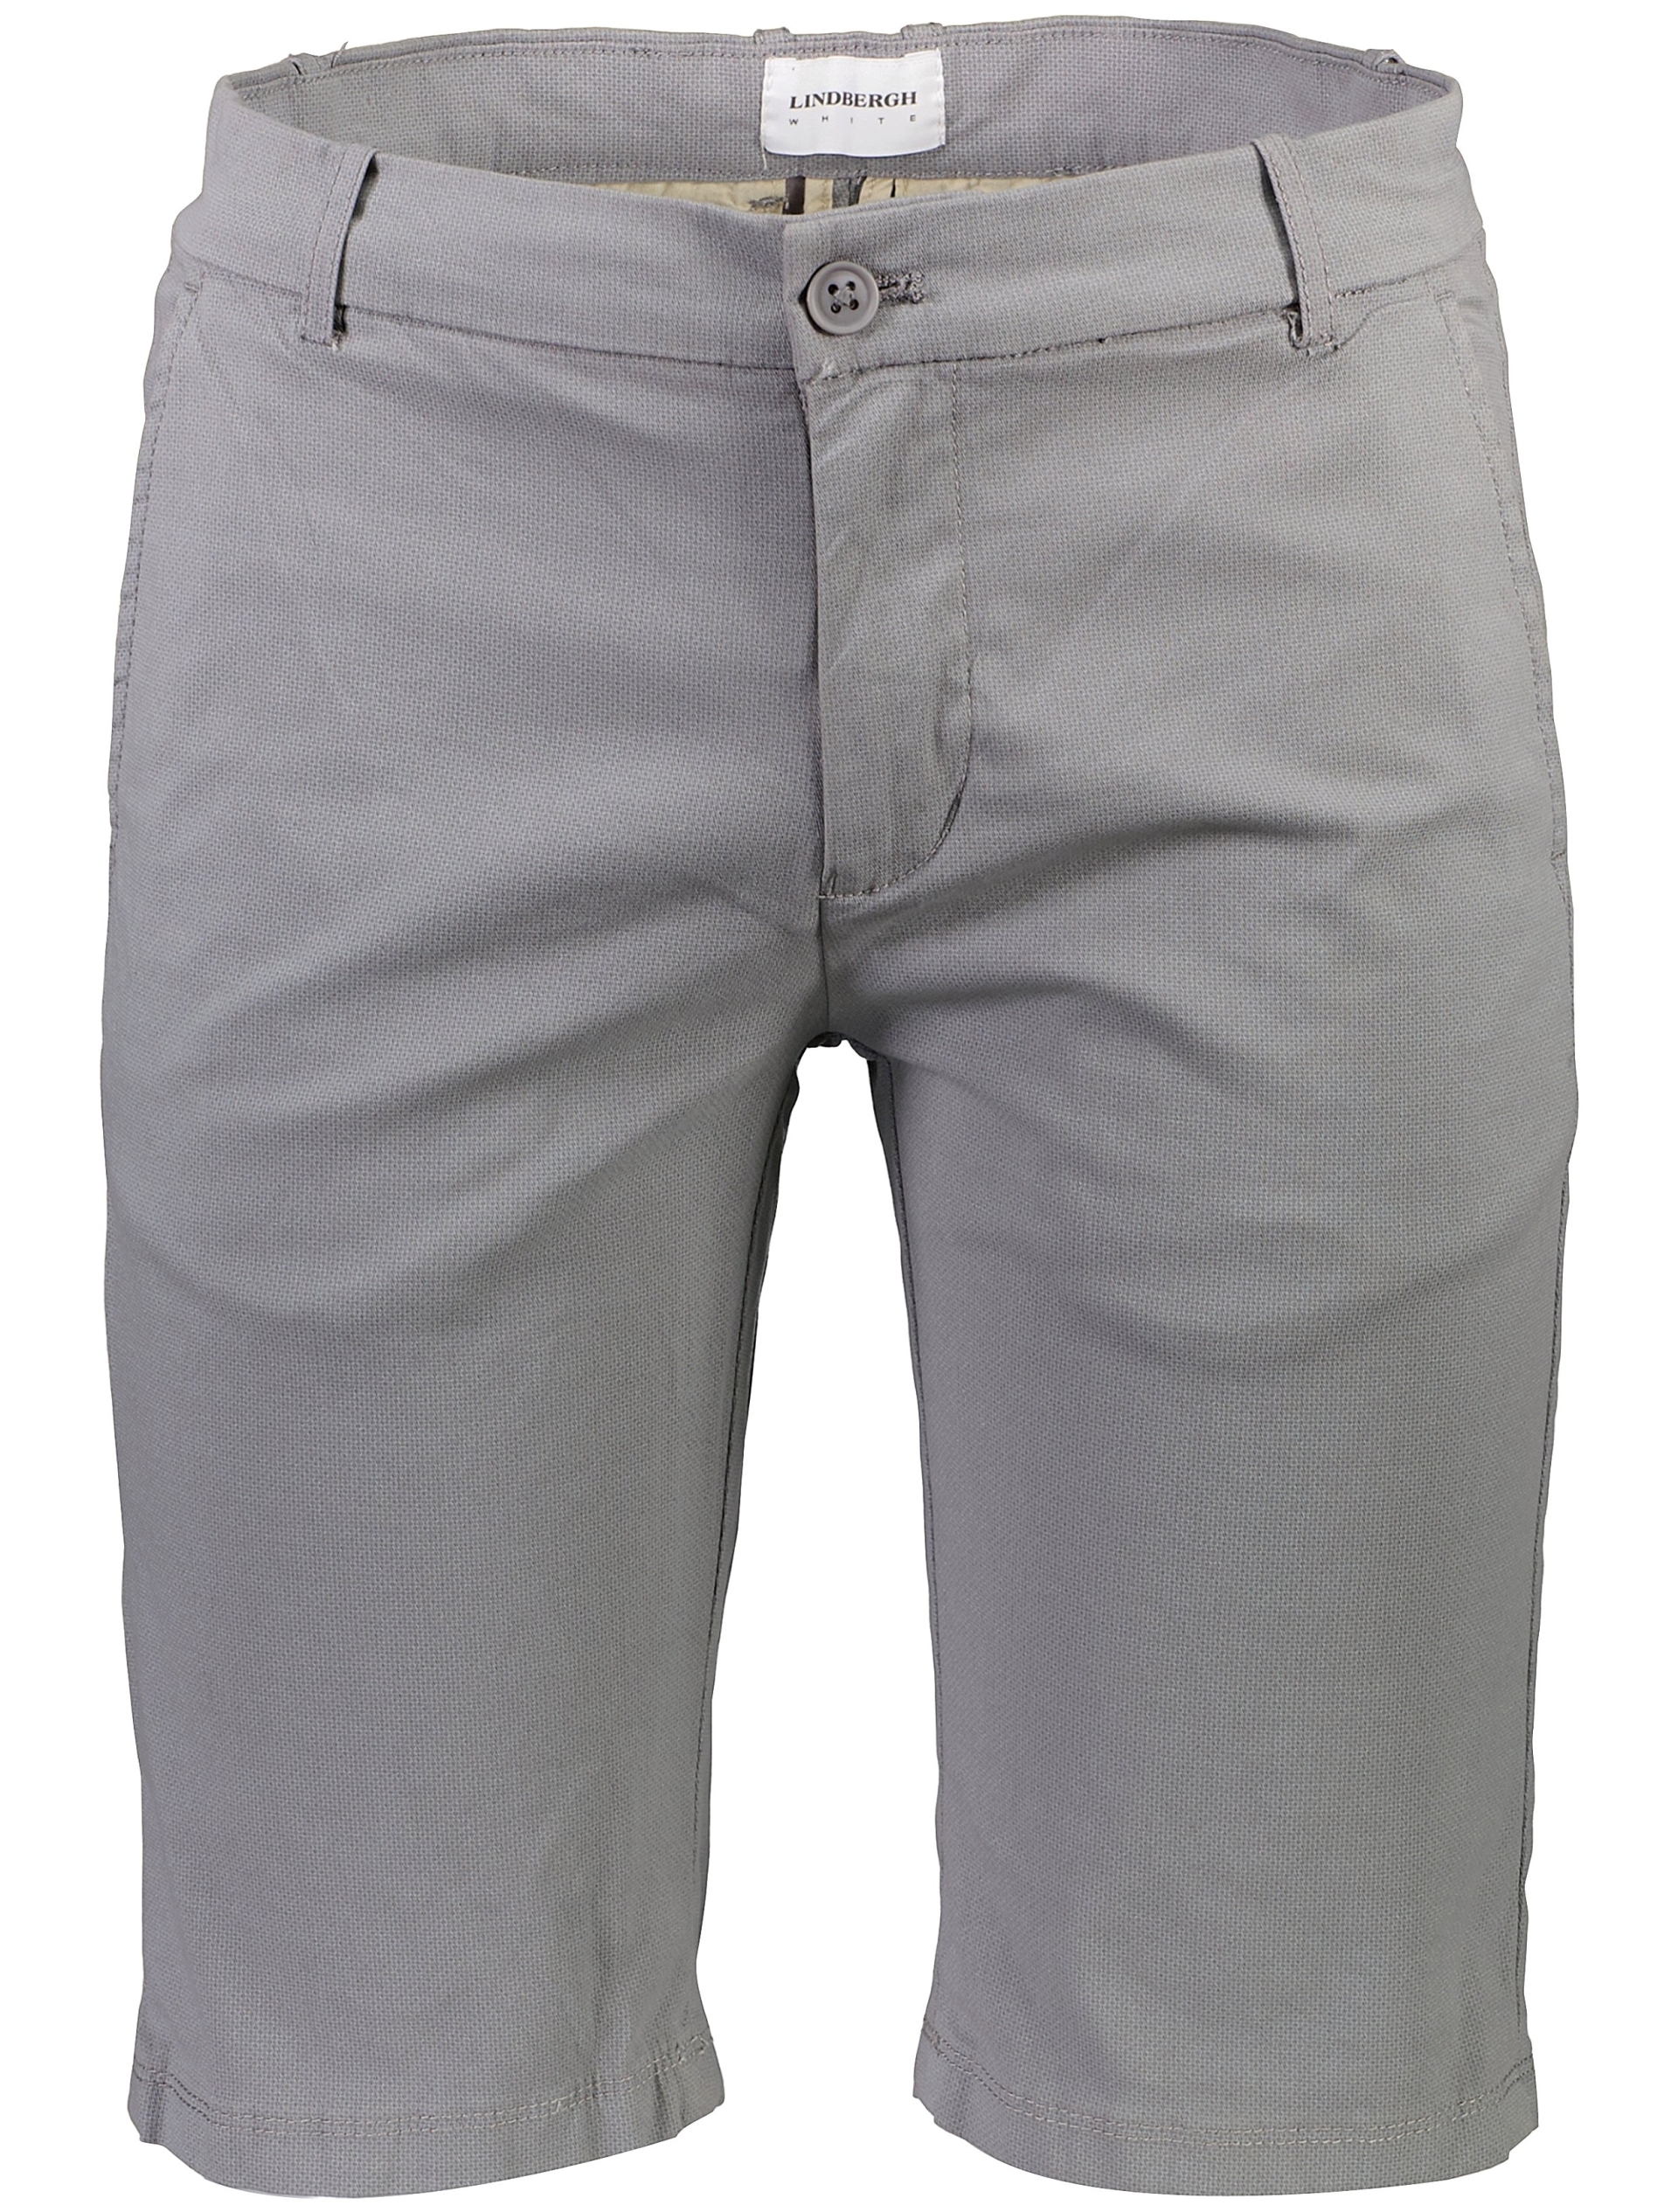 Lindbergh Chino shorts grey / dk grey